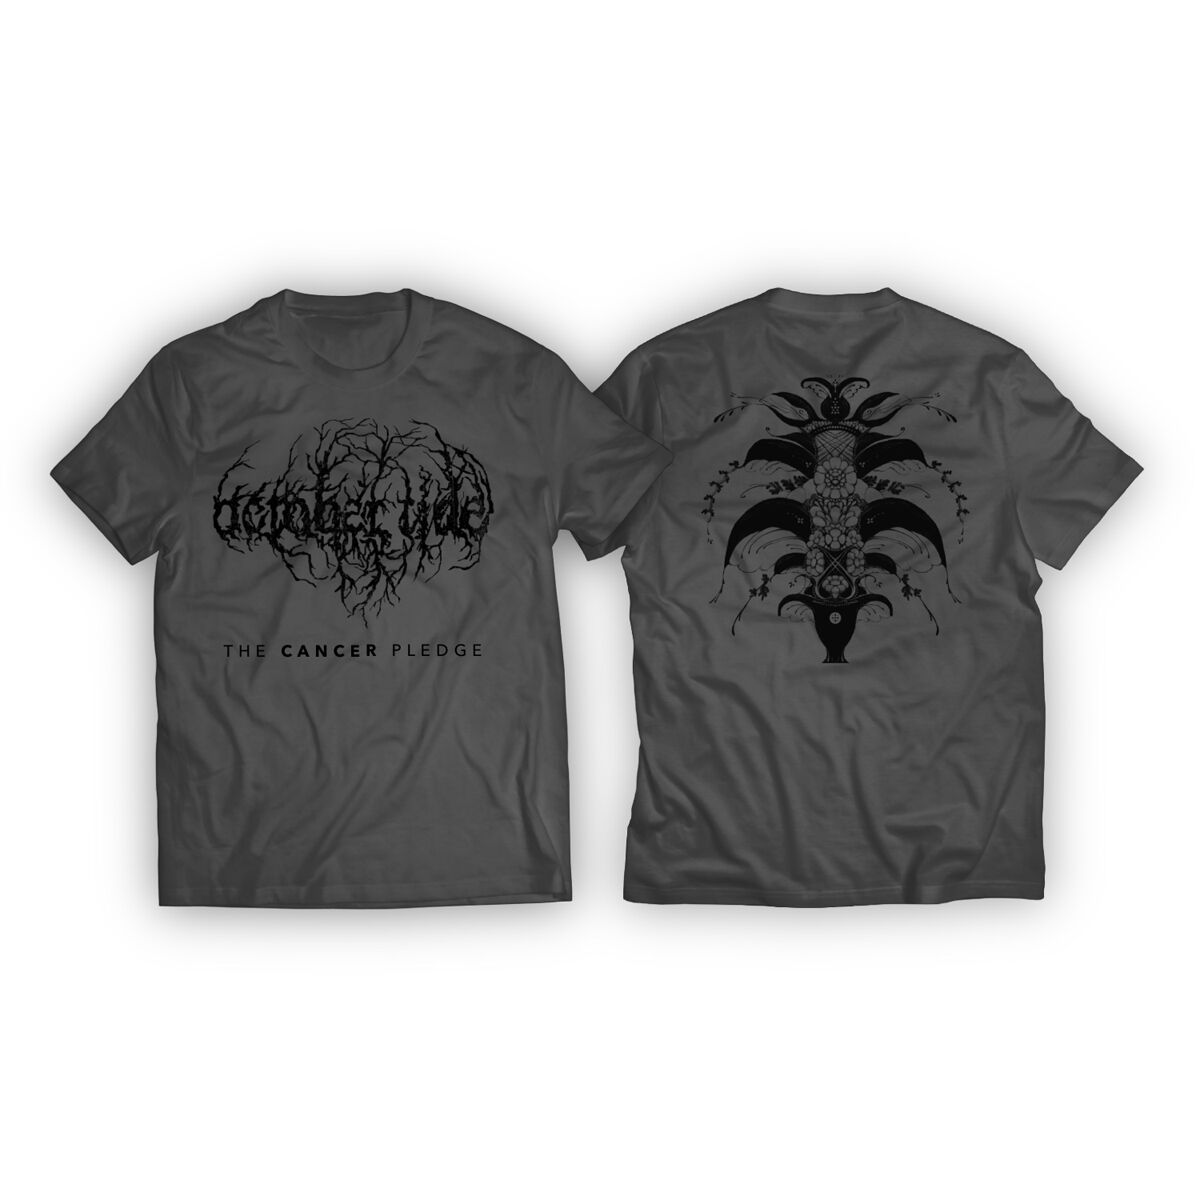 October Tide T-Shirt - The Cancer Pledge - S bis L - für Männer - Größe L - grau  - Lizenziertes Merchandise!